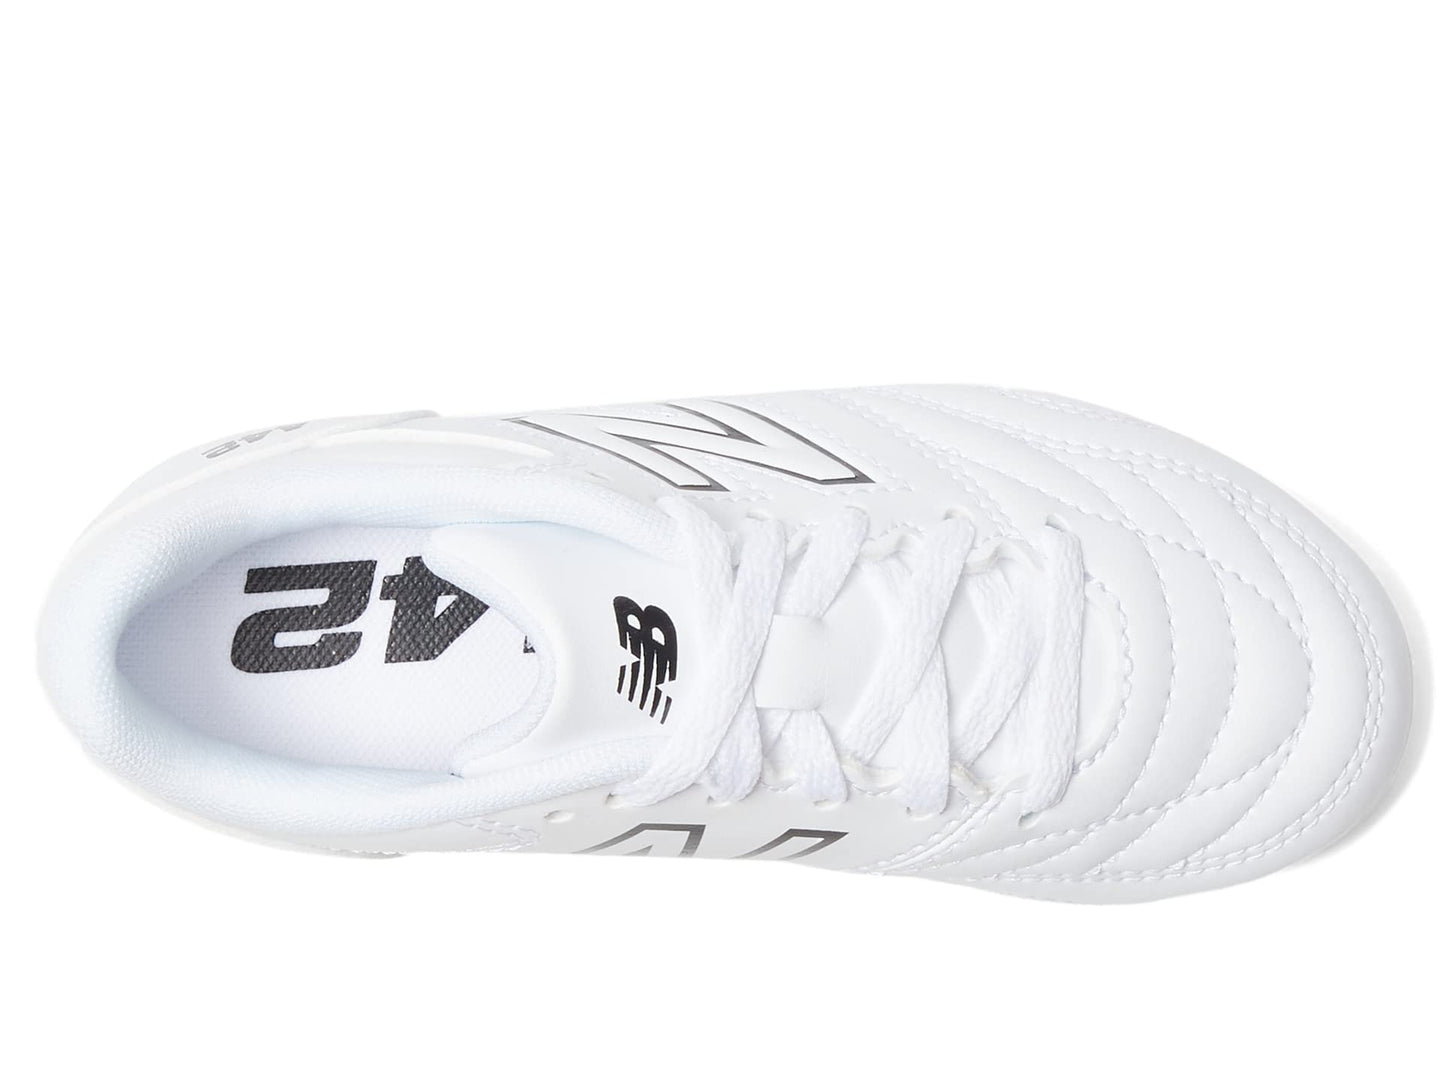 New Balance Boy's 442 V2 Academy FG Junior Soccer Shoe, White/Black, 2 Little Kid